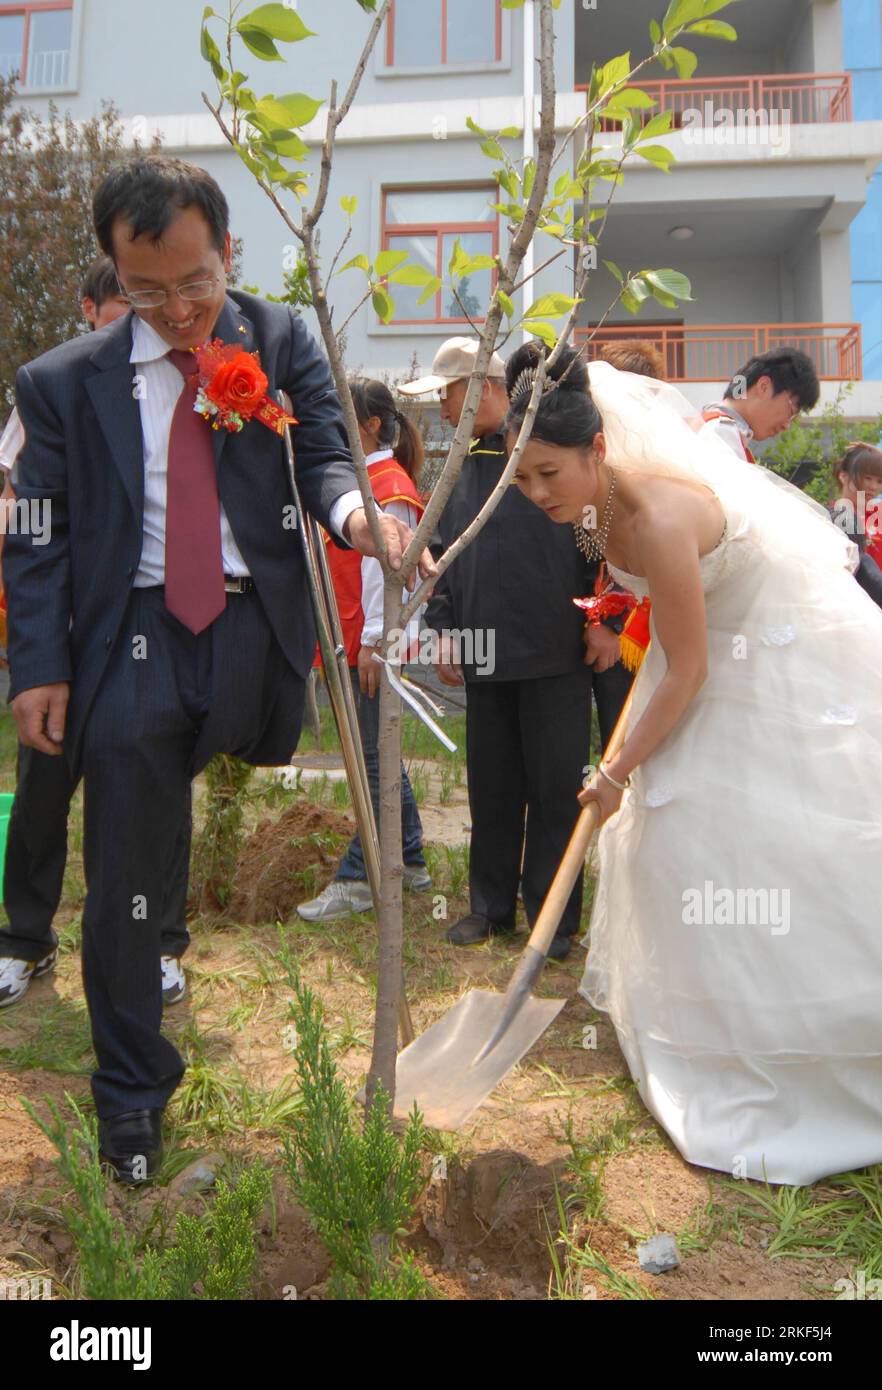 Bildnummer : 55348611 Datum : 15.05.2011 Copyright : imago/Xinhua (110515) -- WEIFANG, 15 mai 2011 (Xinhua) -- Un couple de jeunes mariés plante un arbre du bonheur lors d'un mariage de masse pour handicapés à Weifang, dans la province du Shandong de l'est de la Chine, le 15 mai 2011. Le premier mariage de masse pour les handicapés, avec la participation de 18 couples, a eu lieu dans la ville de Weifang le dimanche, la 21e Journée nationale de l'aide aux handicapés, avec pour thème l'amélioration des moyens de subsistance des handicapés, la protection des droits et des intérêts des handicapés. (Xinhua/CAO Lianghua)(zxh) CHINE-SHANDONG-JOURNÉE NATIONALE D'AIDE AUX HANDICAPÉS-COLLECTIF NOUS Banque D'Images